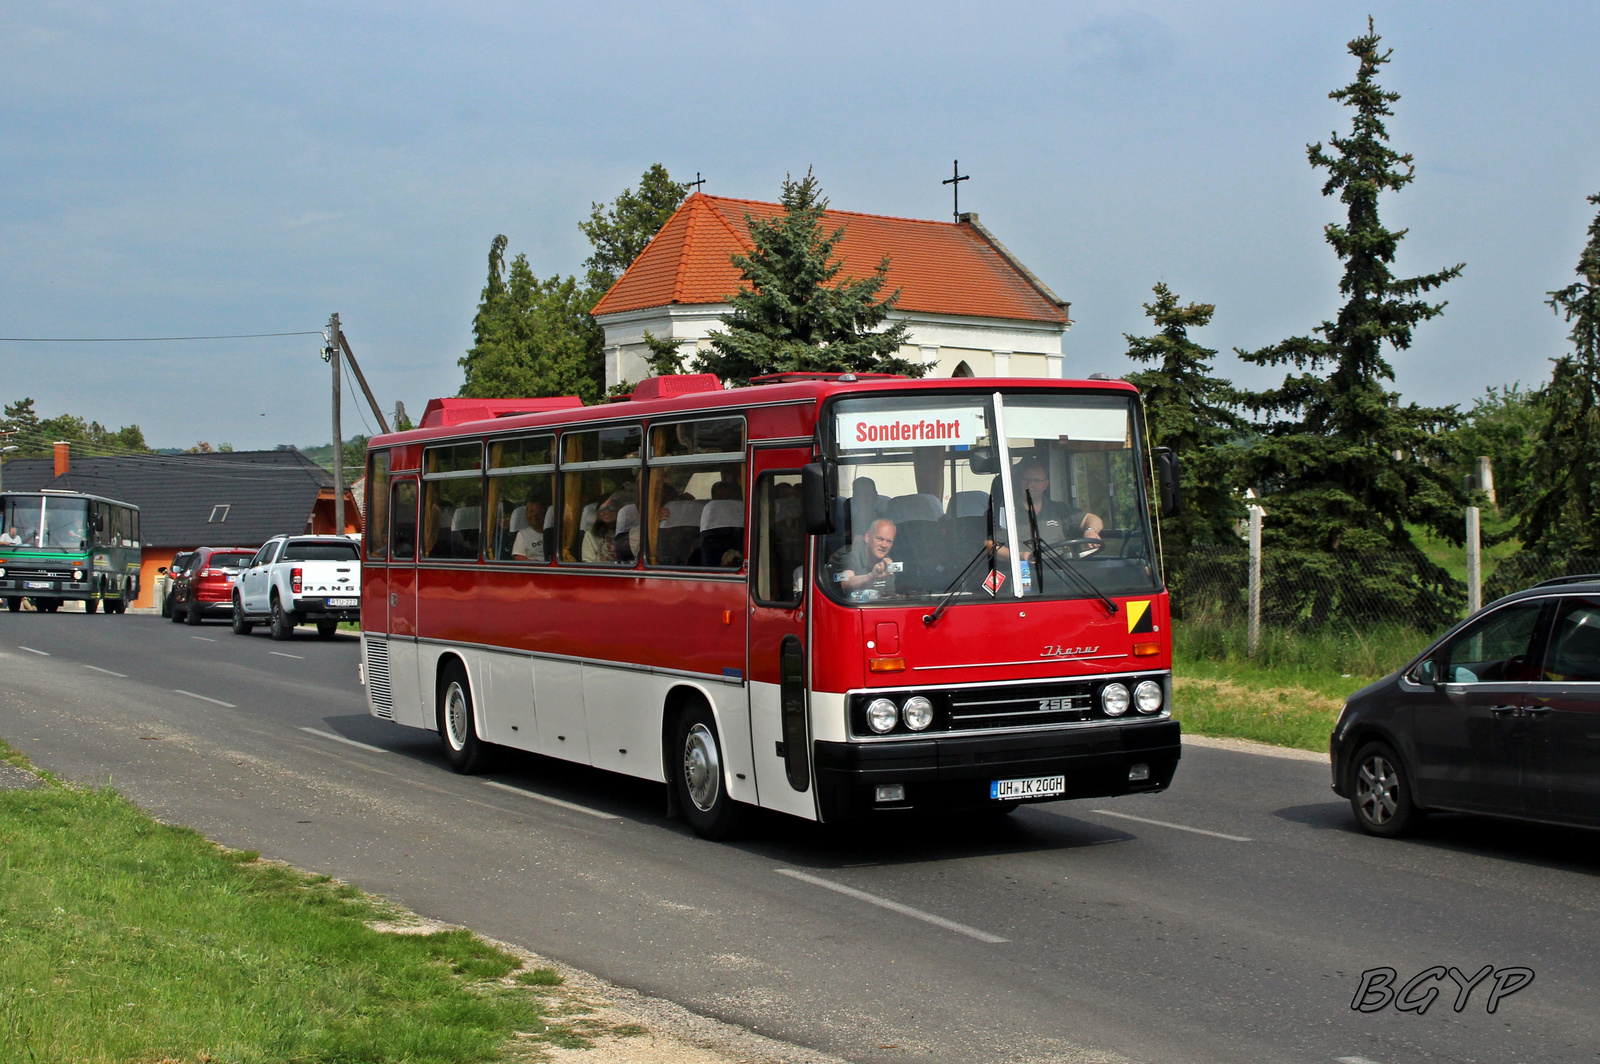 Ikarus 256.50 (UH-IK 200H)